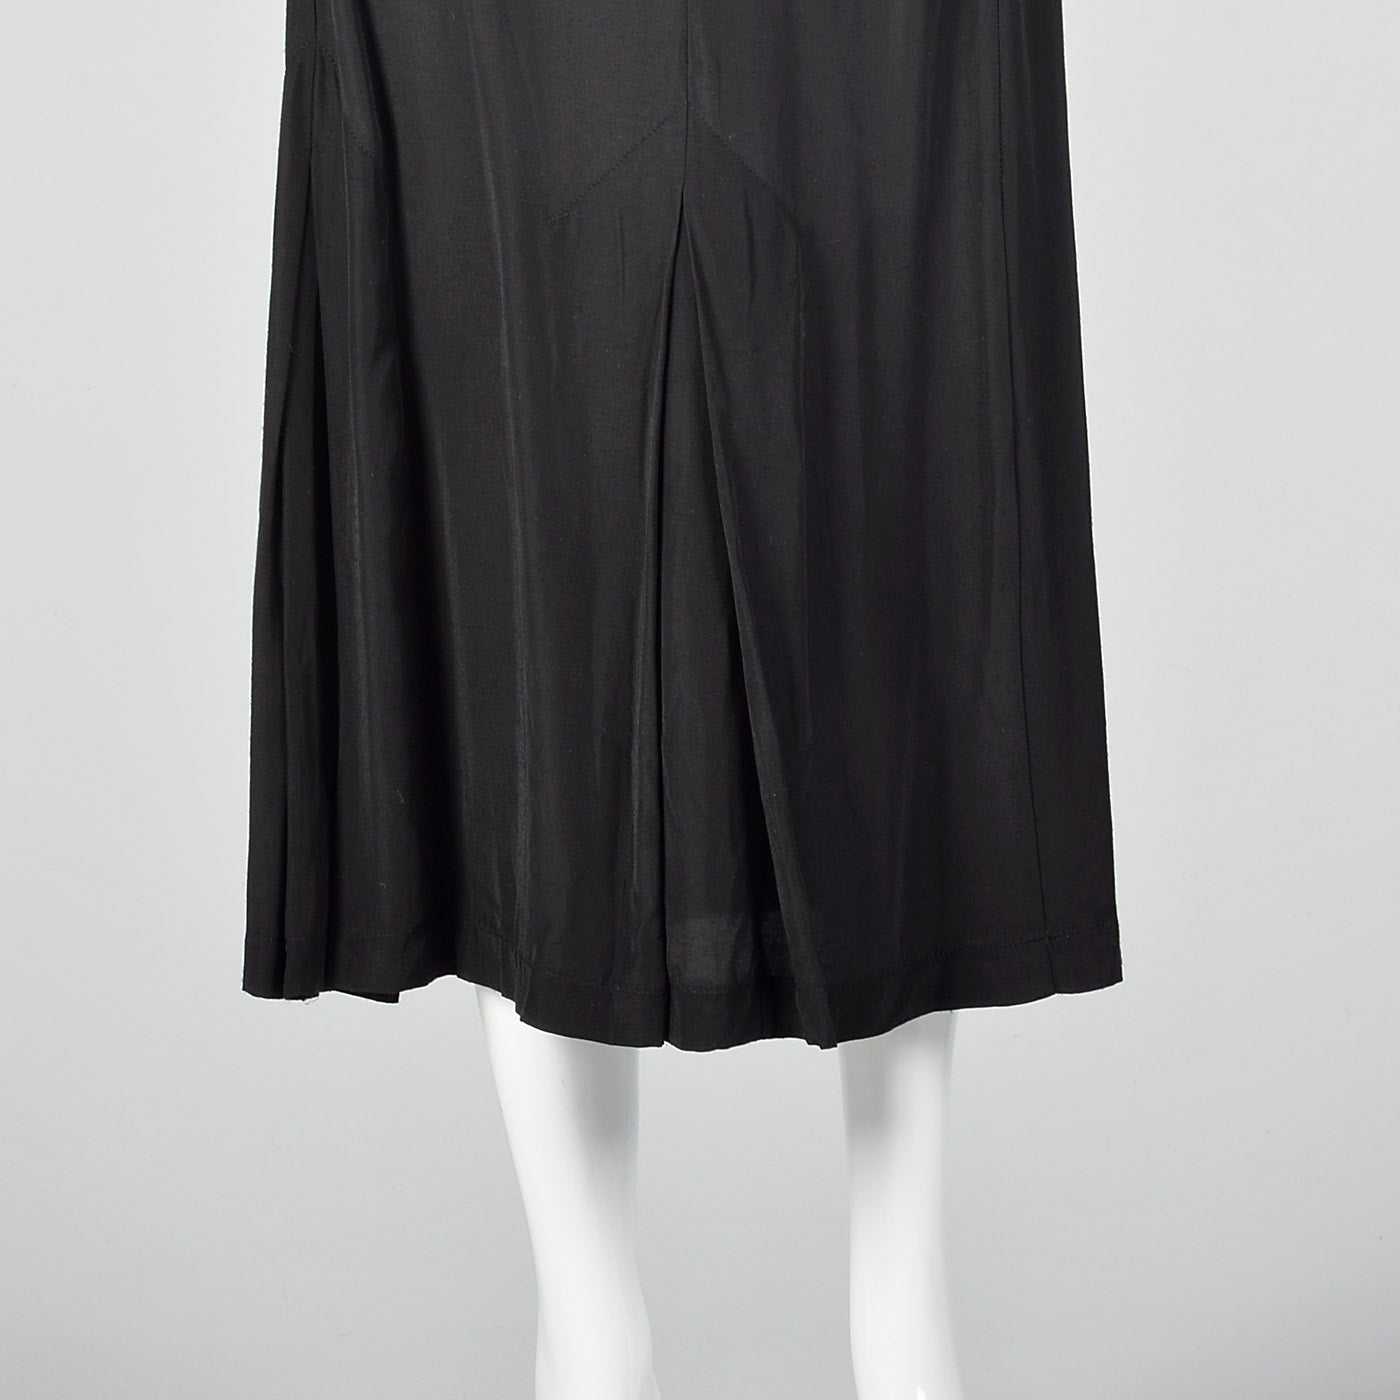 1980s Norma Kamali Black Mermaid Skirt with Pleated Hem